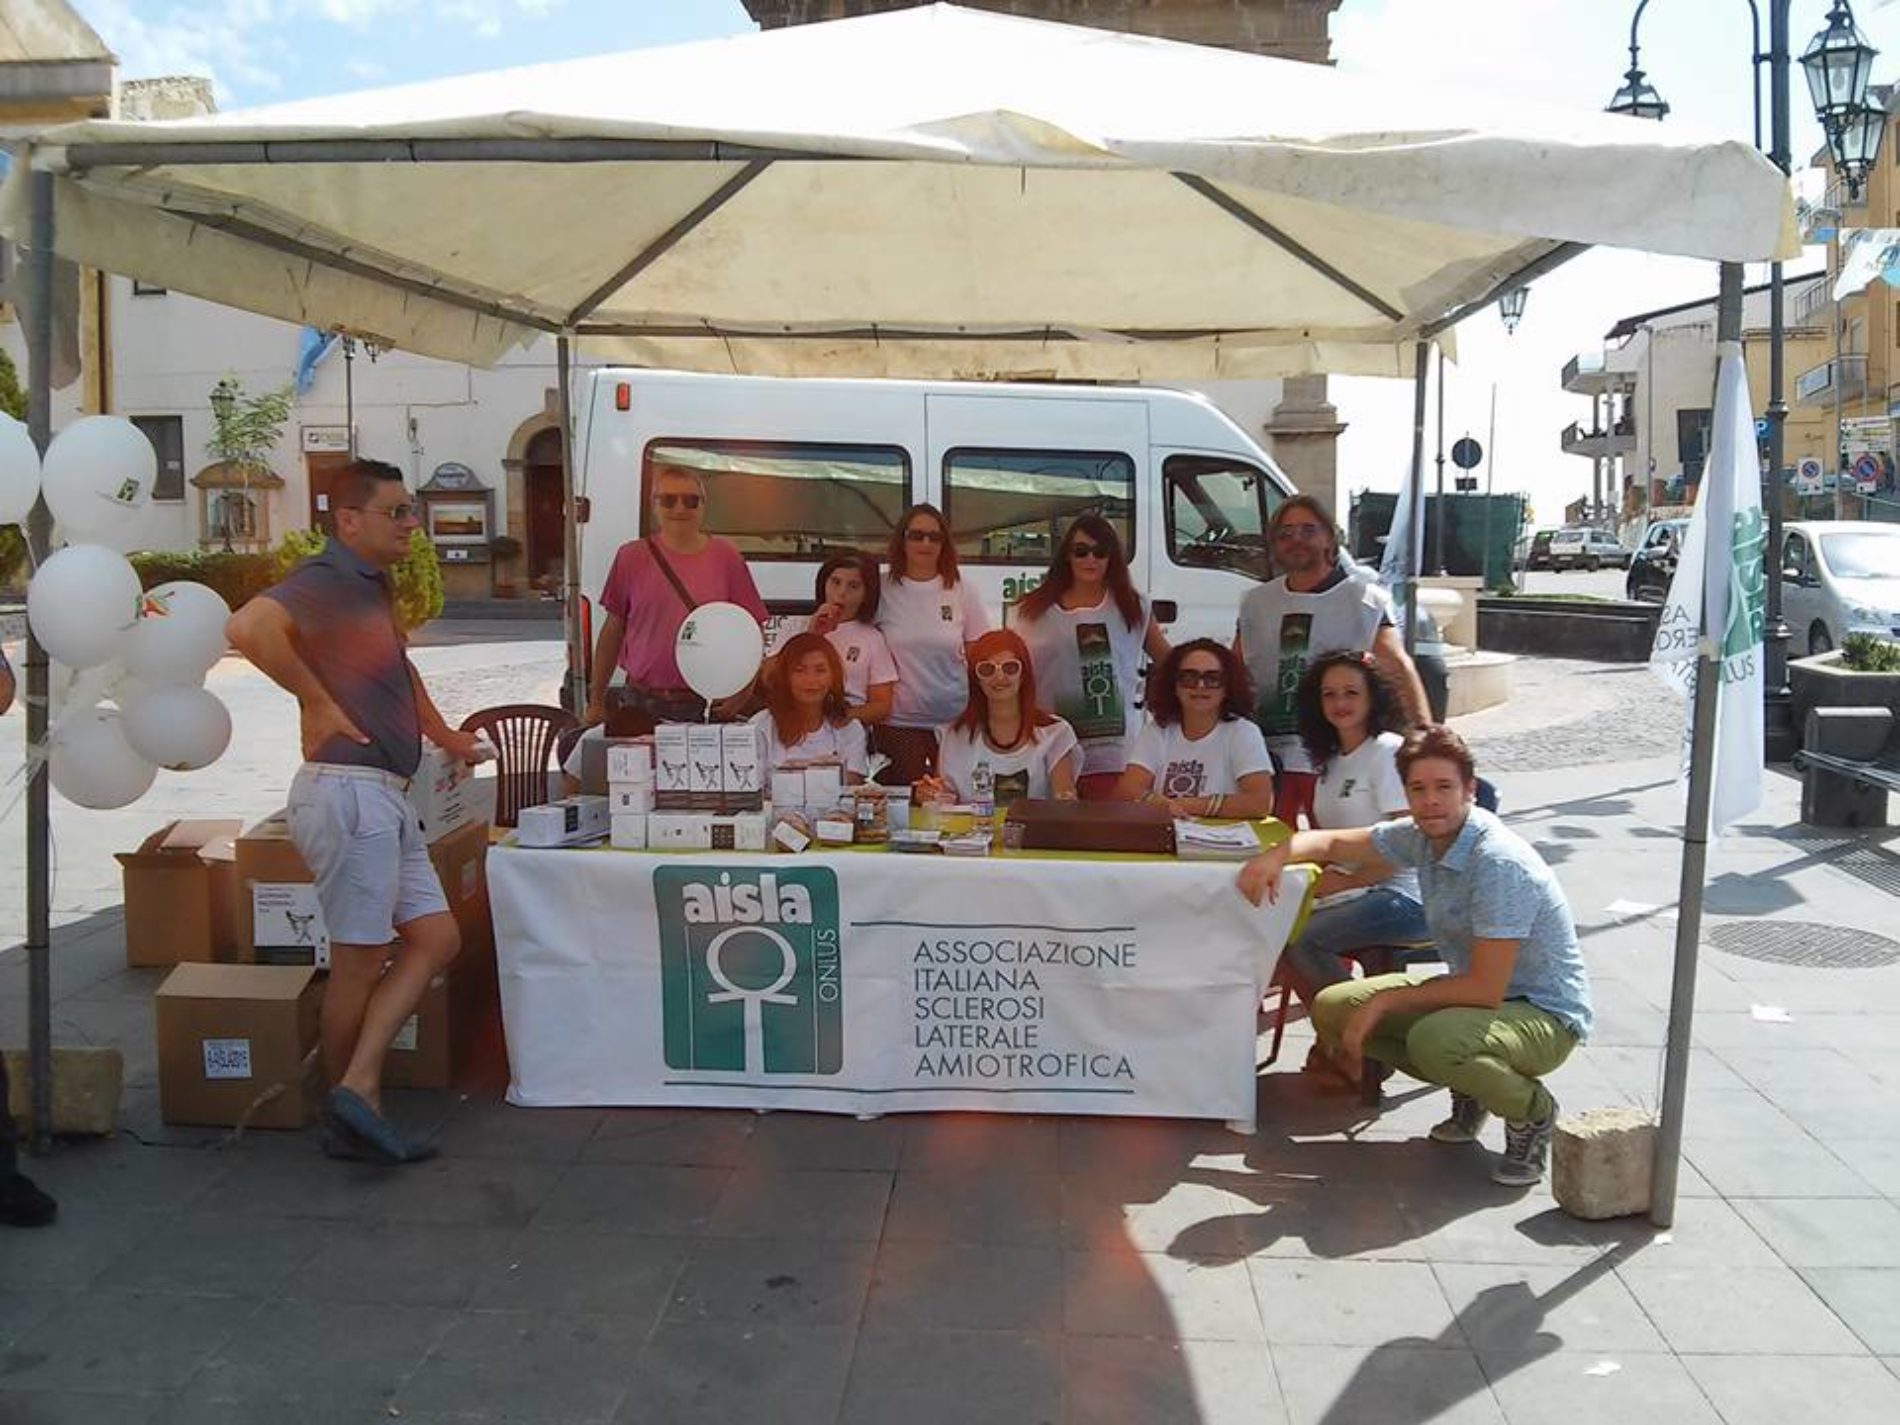 Volontari in piazza Regina Margherita per aiutare la ricerca contro la sclerosi laterale amiotrofica.